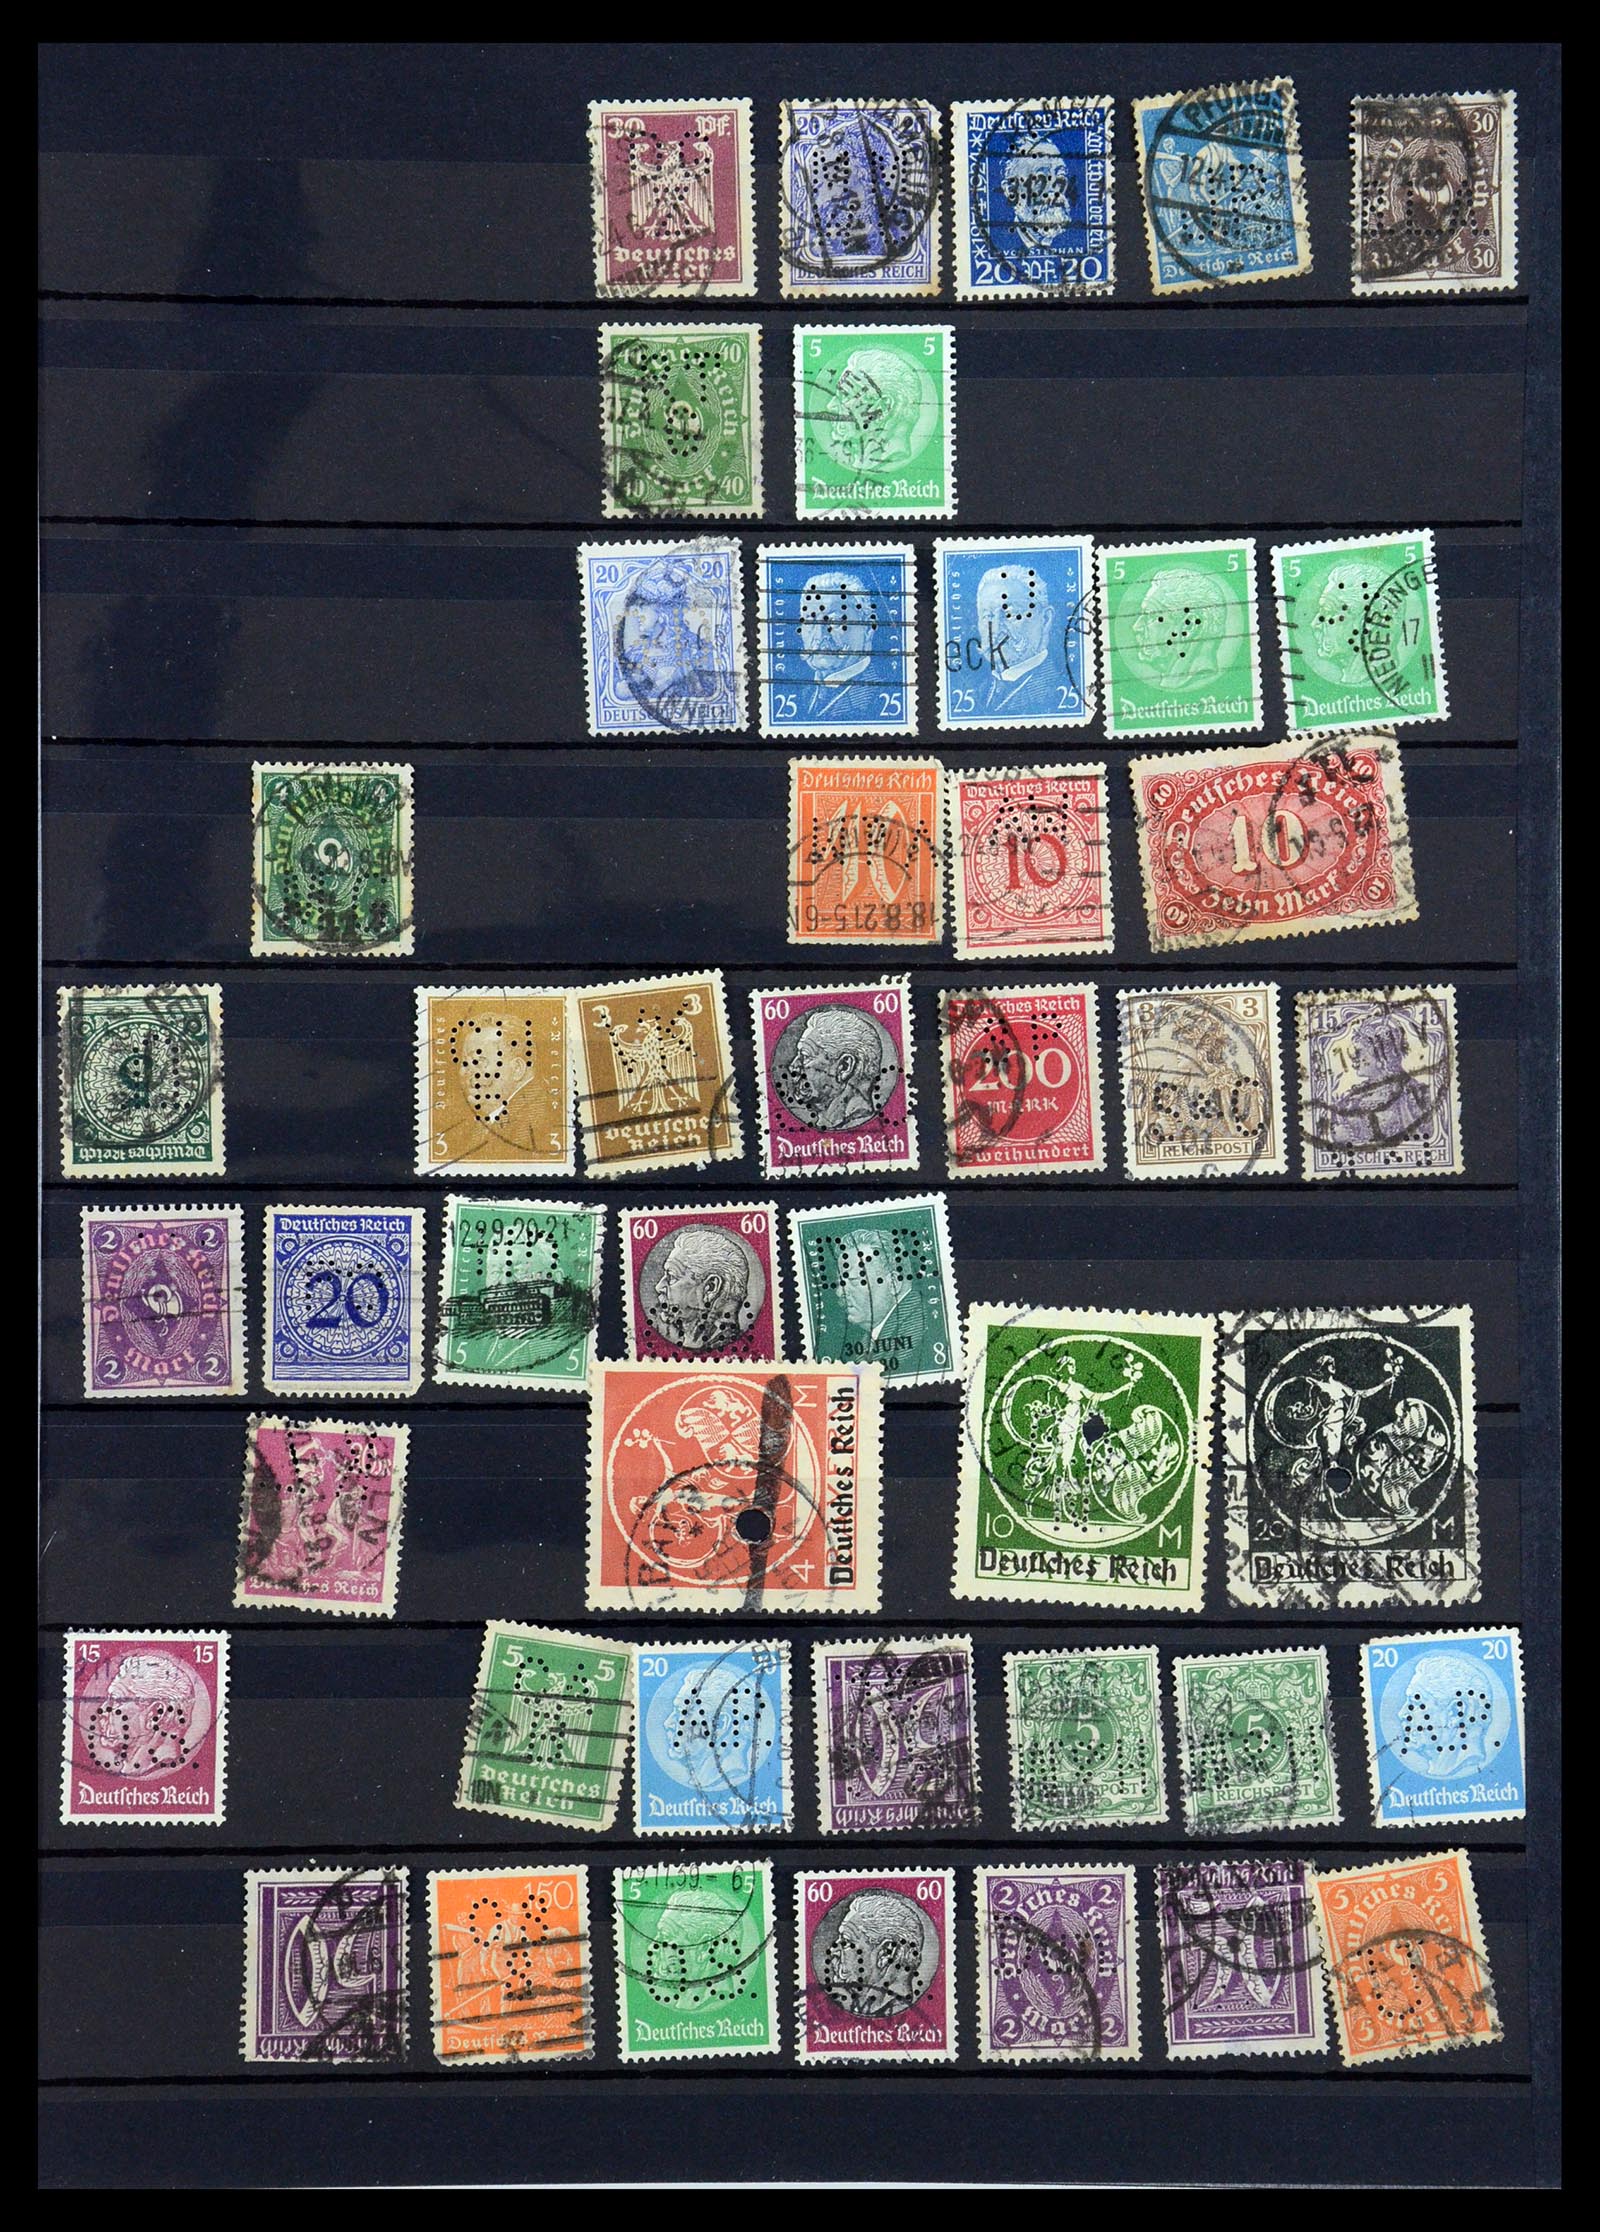 35183 021 - Stamp Collection 35183 German Reich perfins 1880-1945.